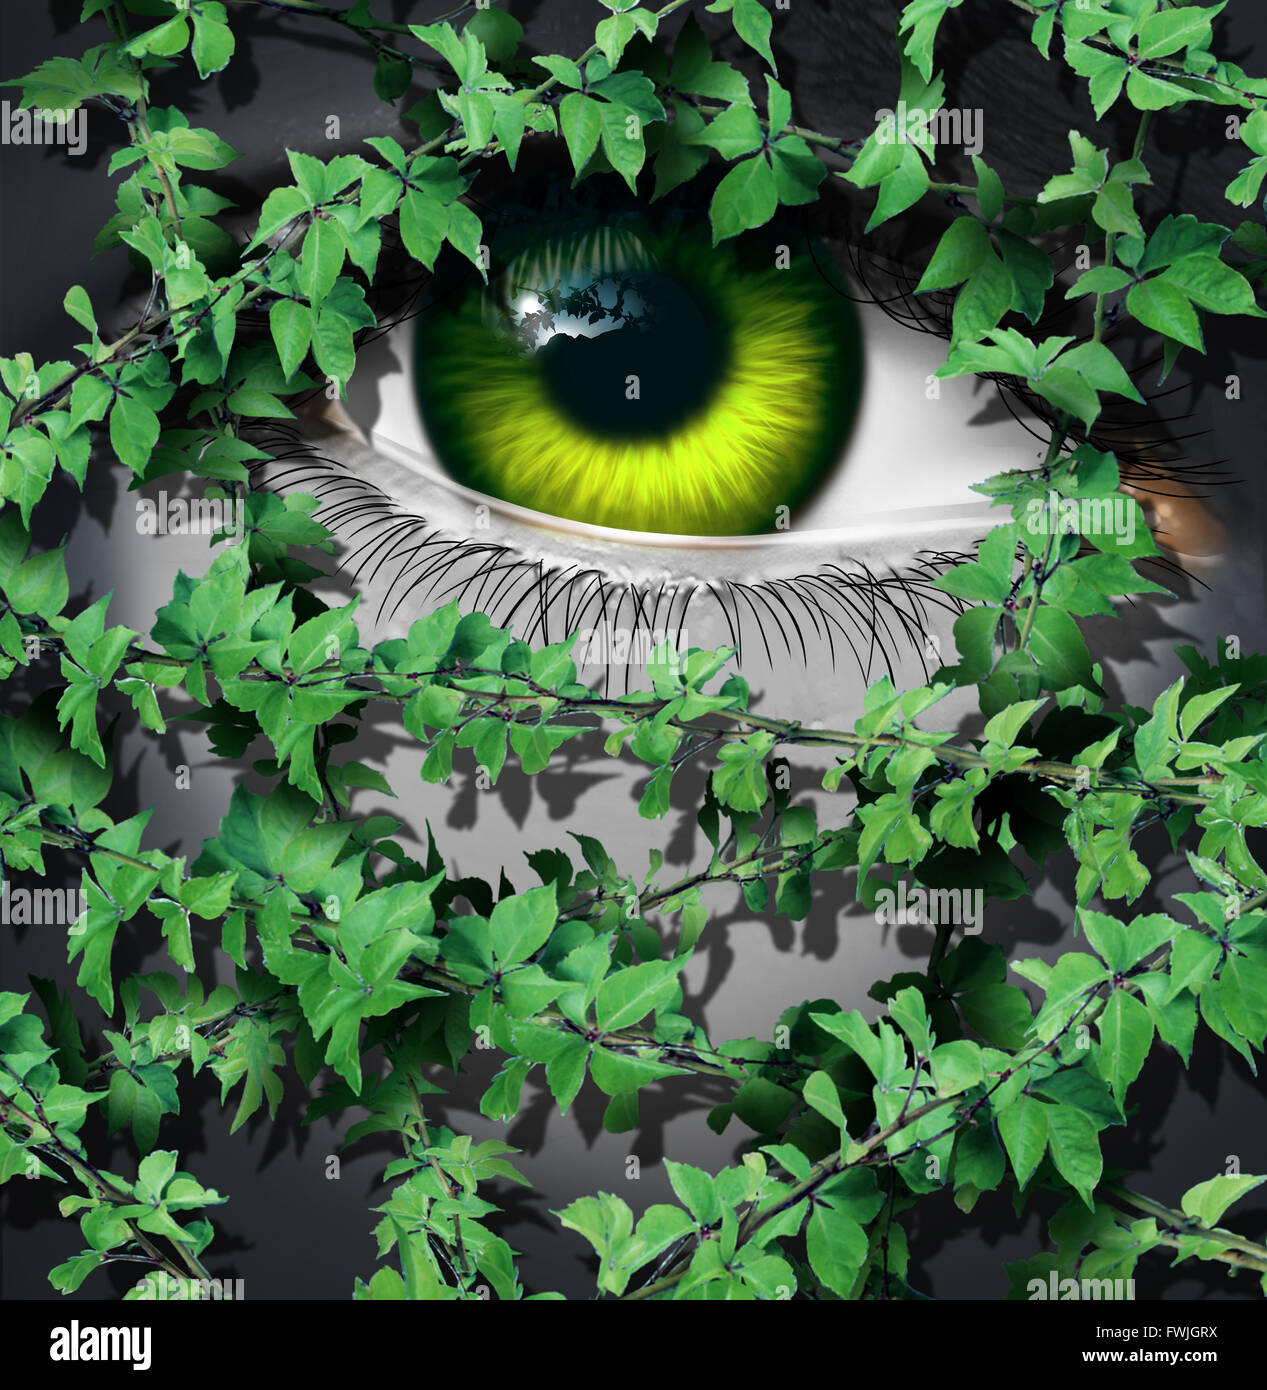 Naturaleza concepto humano como el ojo verde de una persona mirando detrás de un creciente grupo de vides de hoja como una idea ambiental o un símbolo de la visión del día de la tierra. Foto de stock